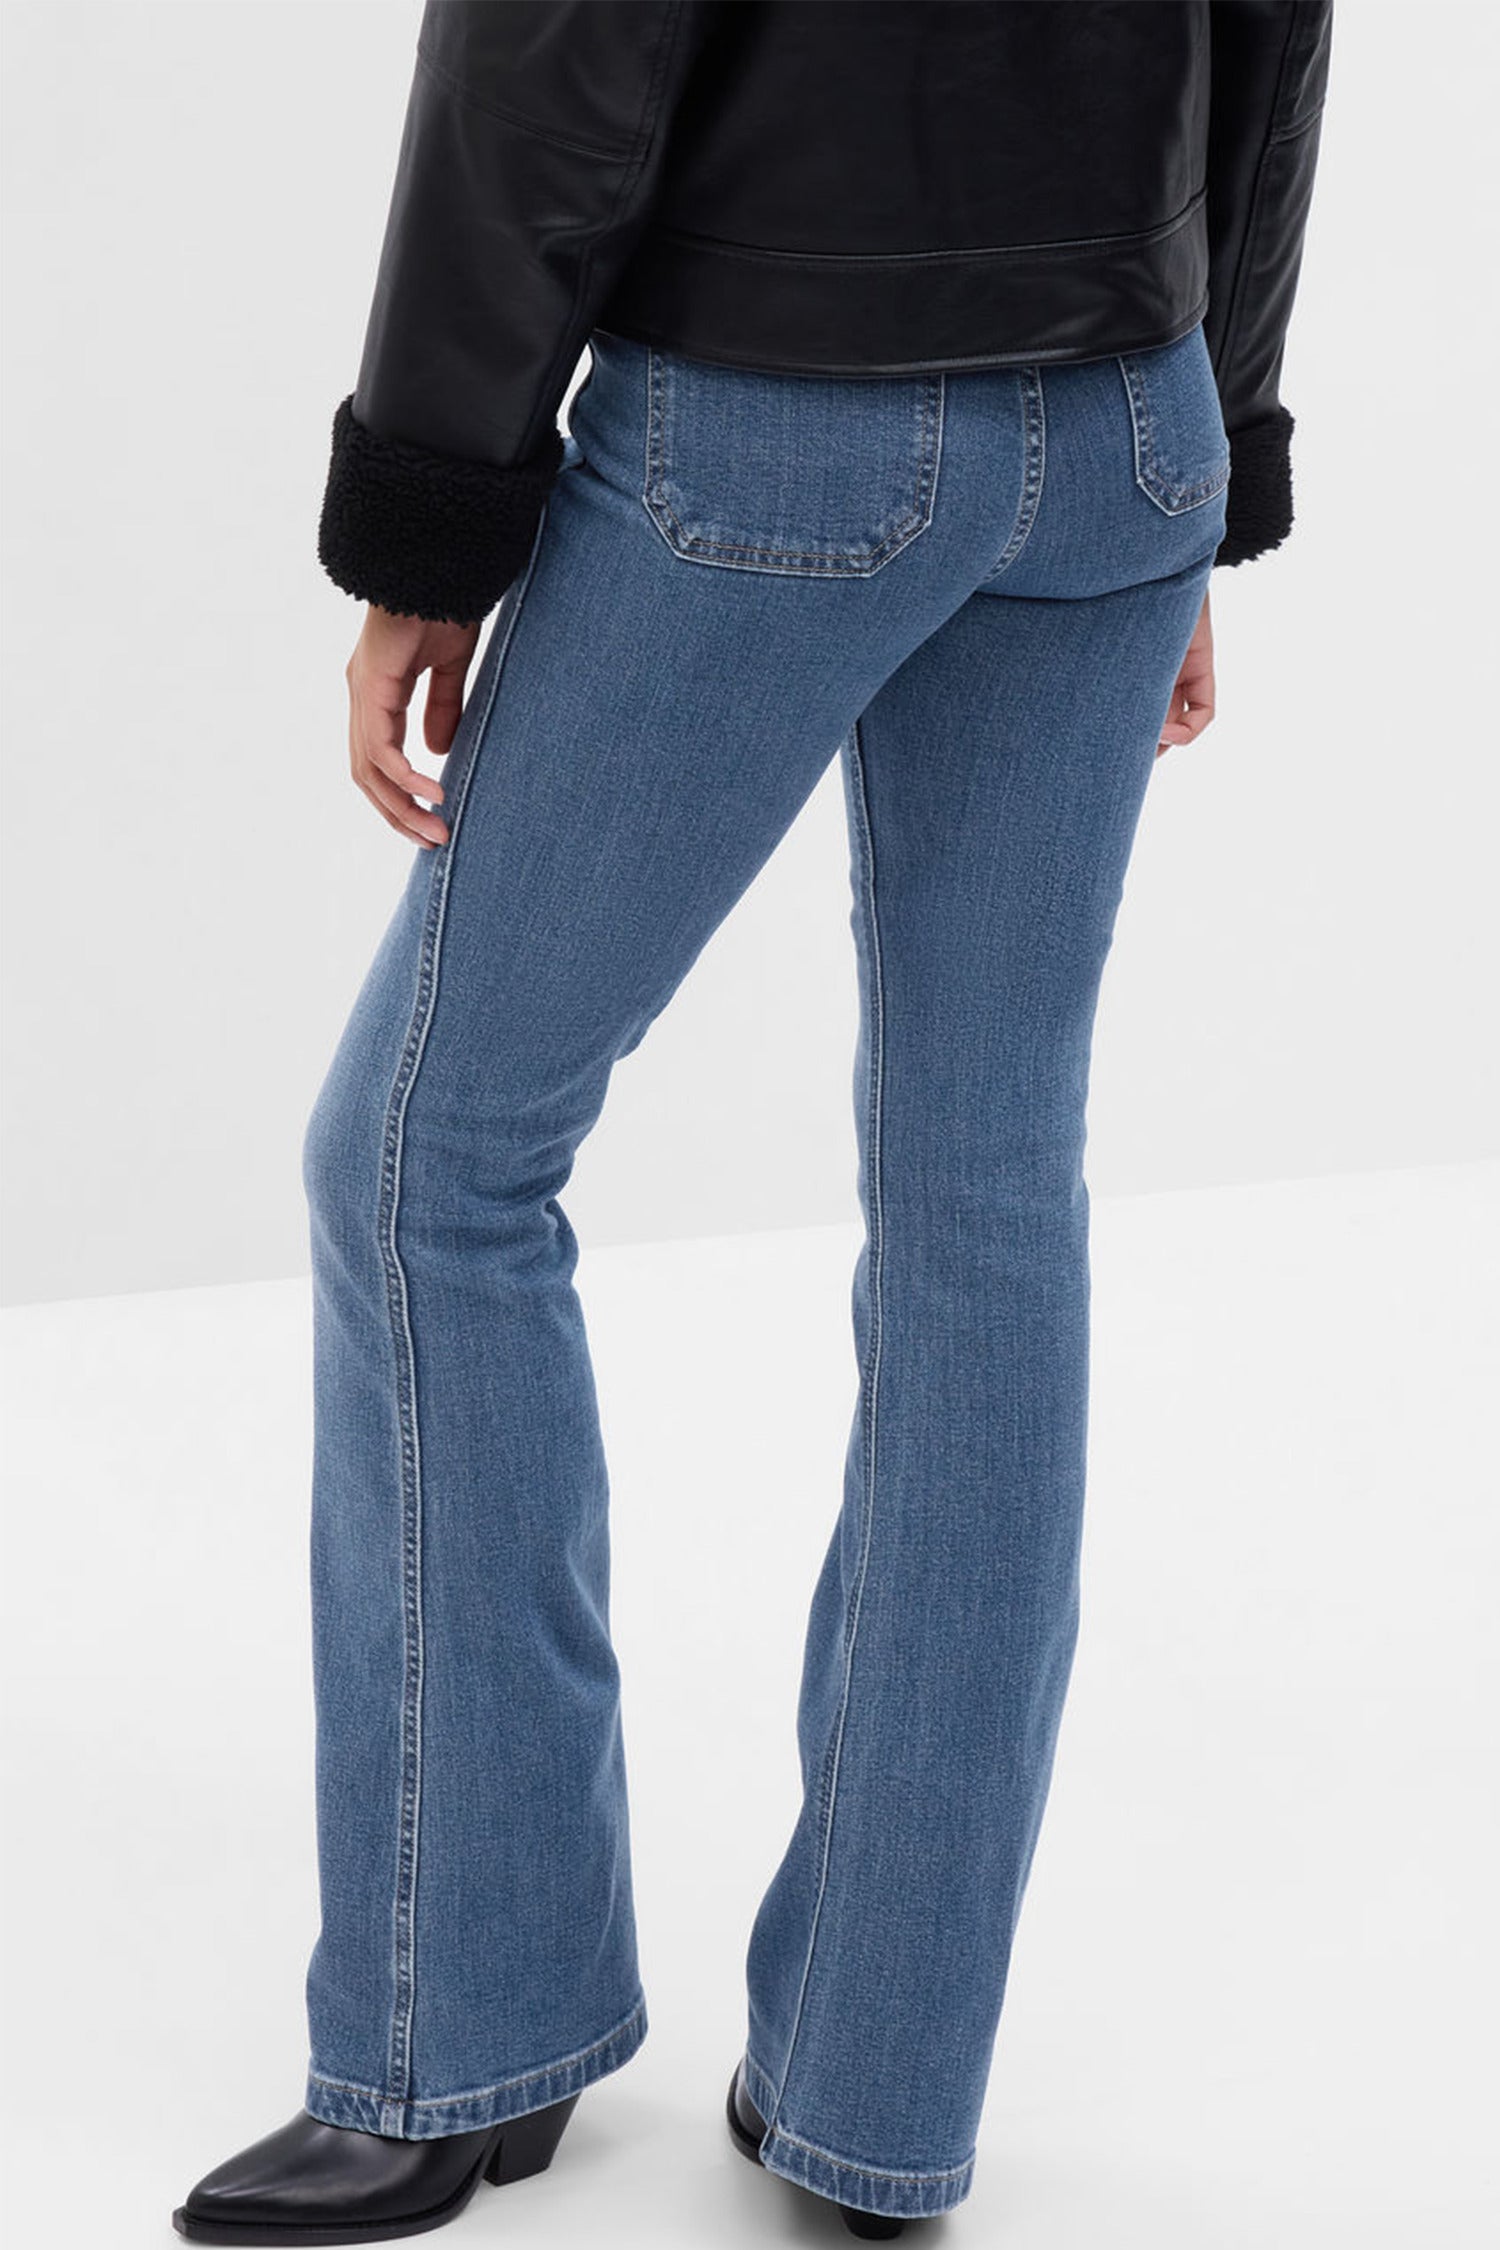 Gap x LoveShackFancy High Rise Floral Flare Jeans - Women's